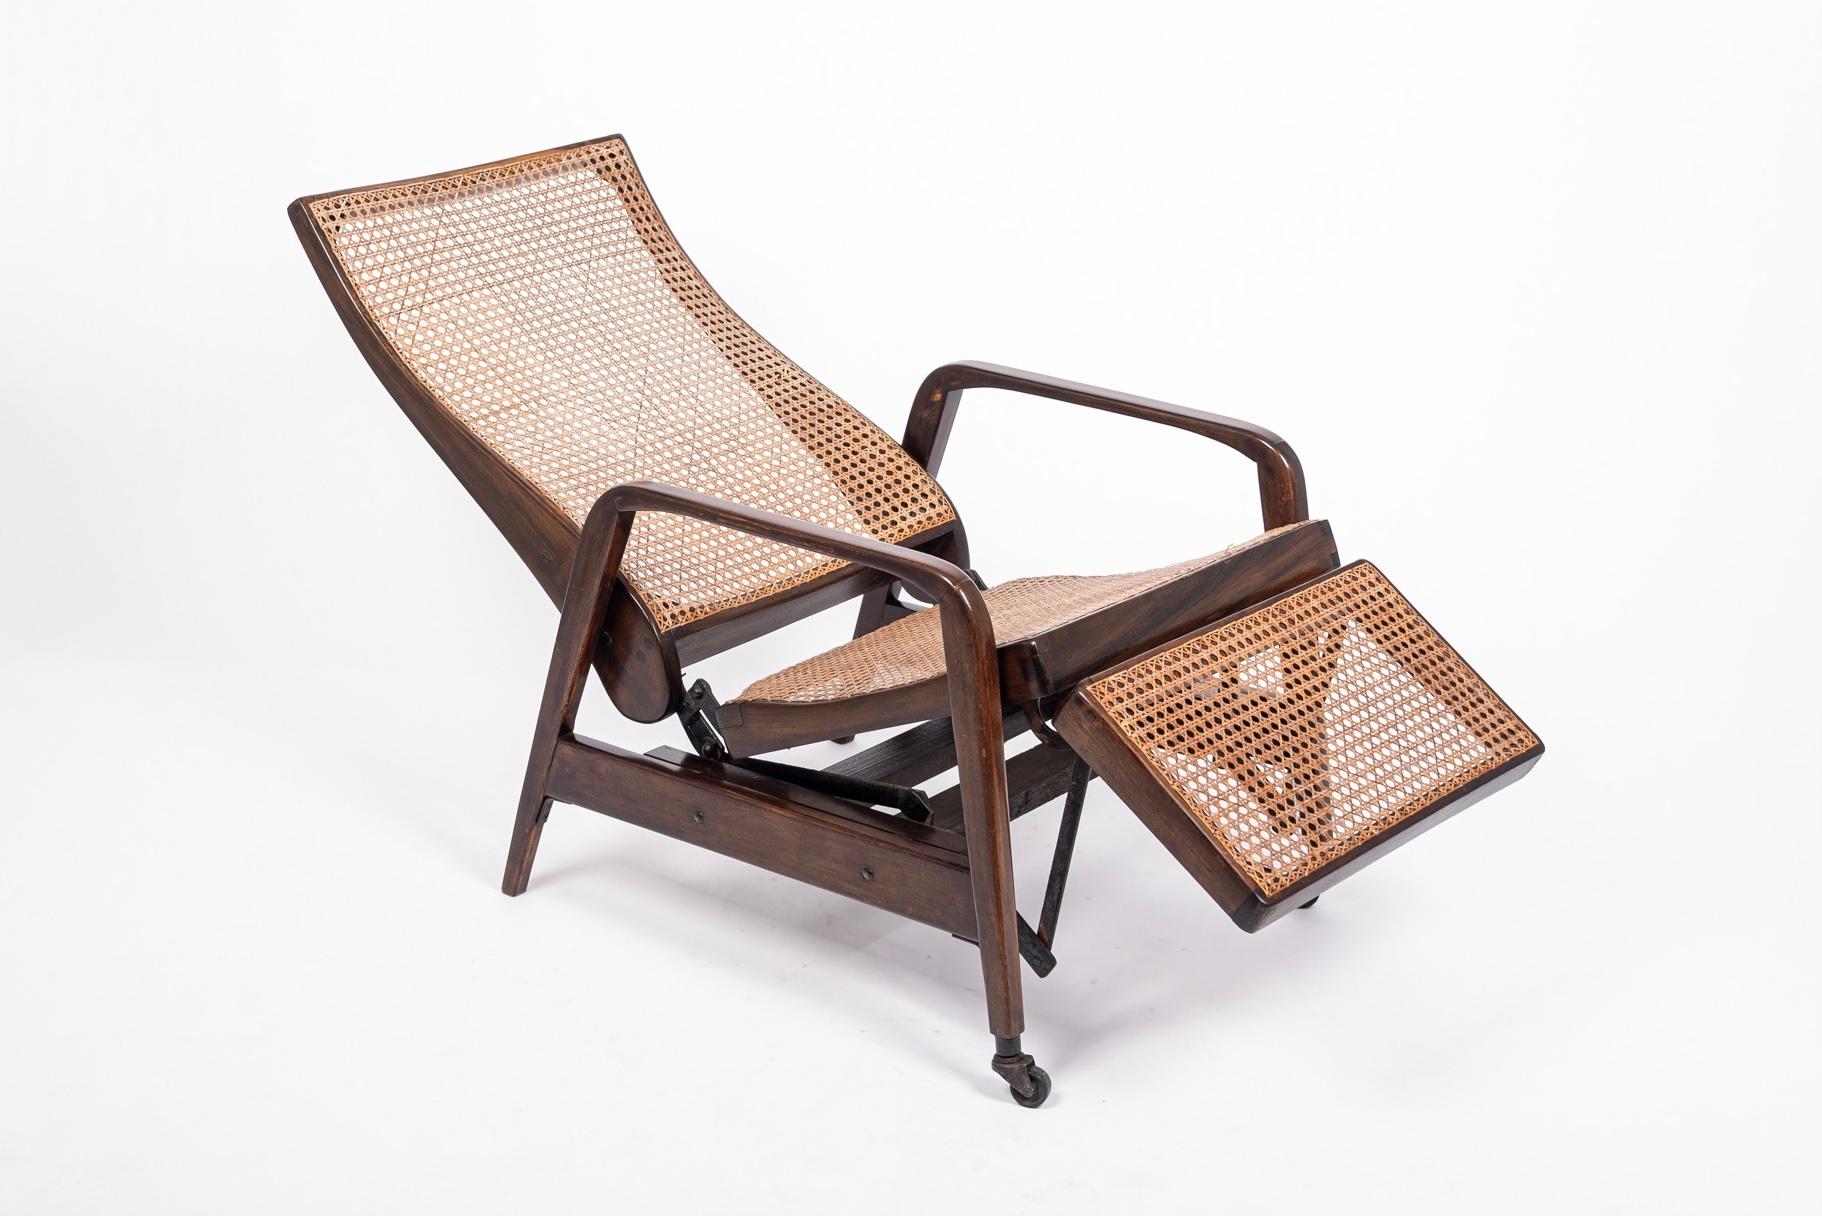 antique recliner chair wooden